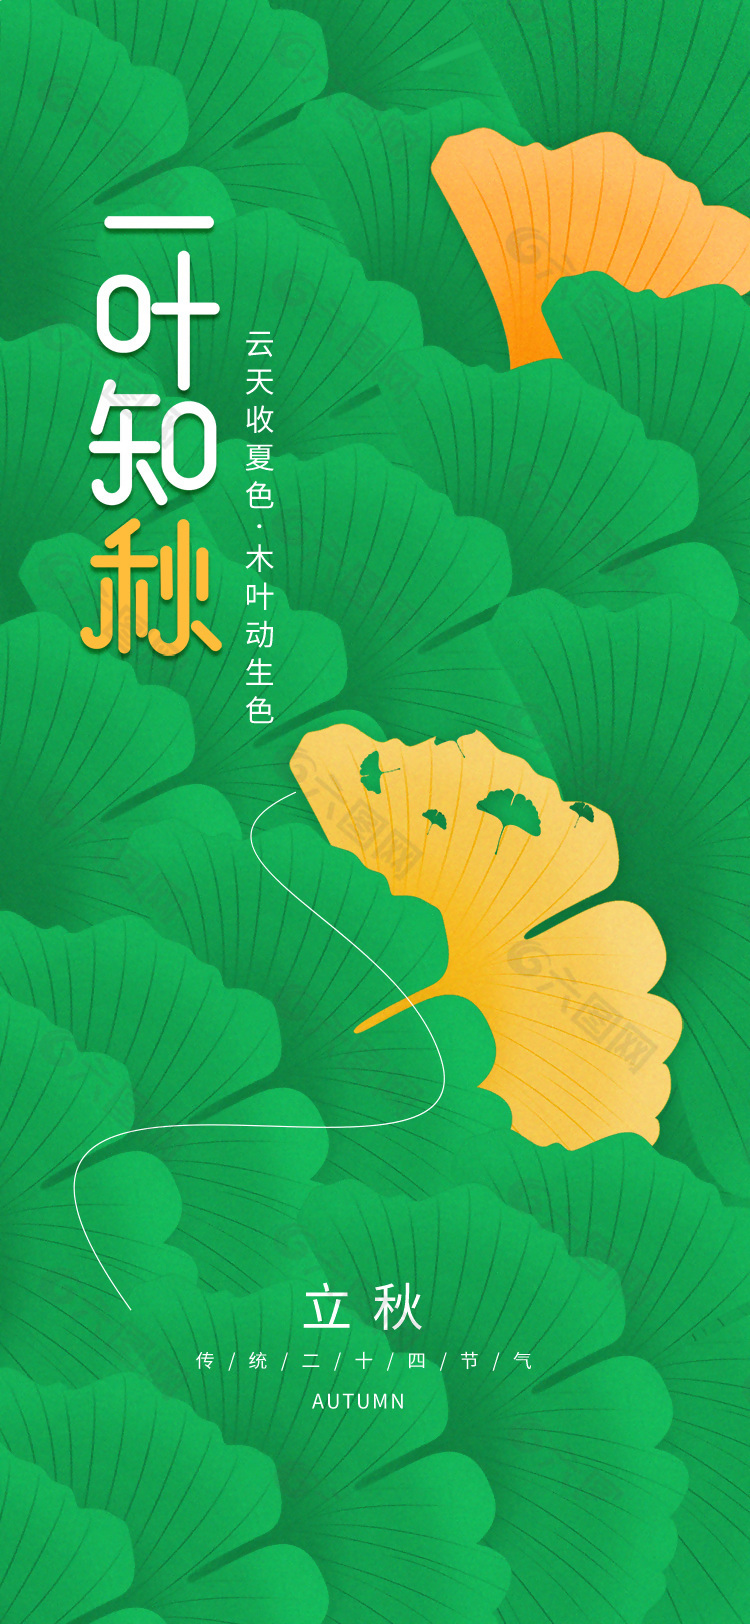 一叶知秋传统立秋节气枫叶背景海报设计